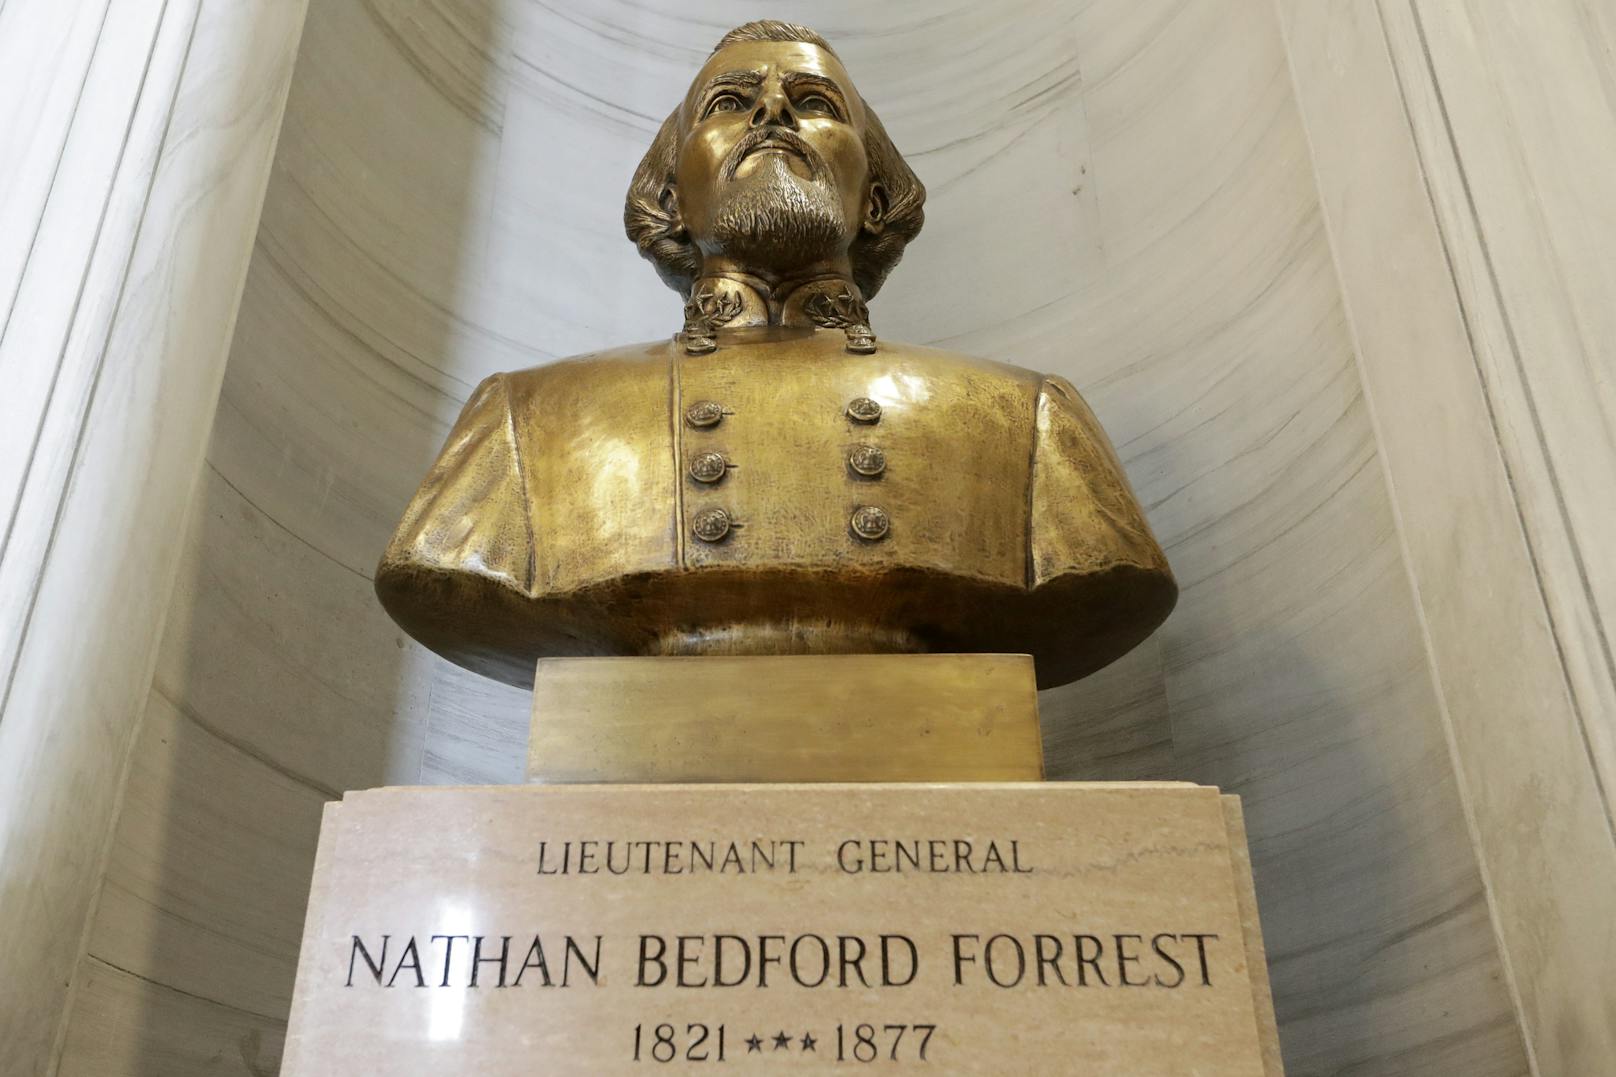 <strong>Die Geburt des Hexenmeisters:</strong> Nathan Bedford Forrest wurde am 13. Juli 1821 geboren. Er wurde 1867 zum ersten „Grand Wizard“ (Großer Hexenmeister) des rassistischen Geheimbundes Ku-Klux-Klan gewählt. 